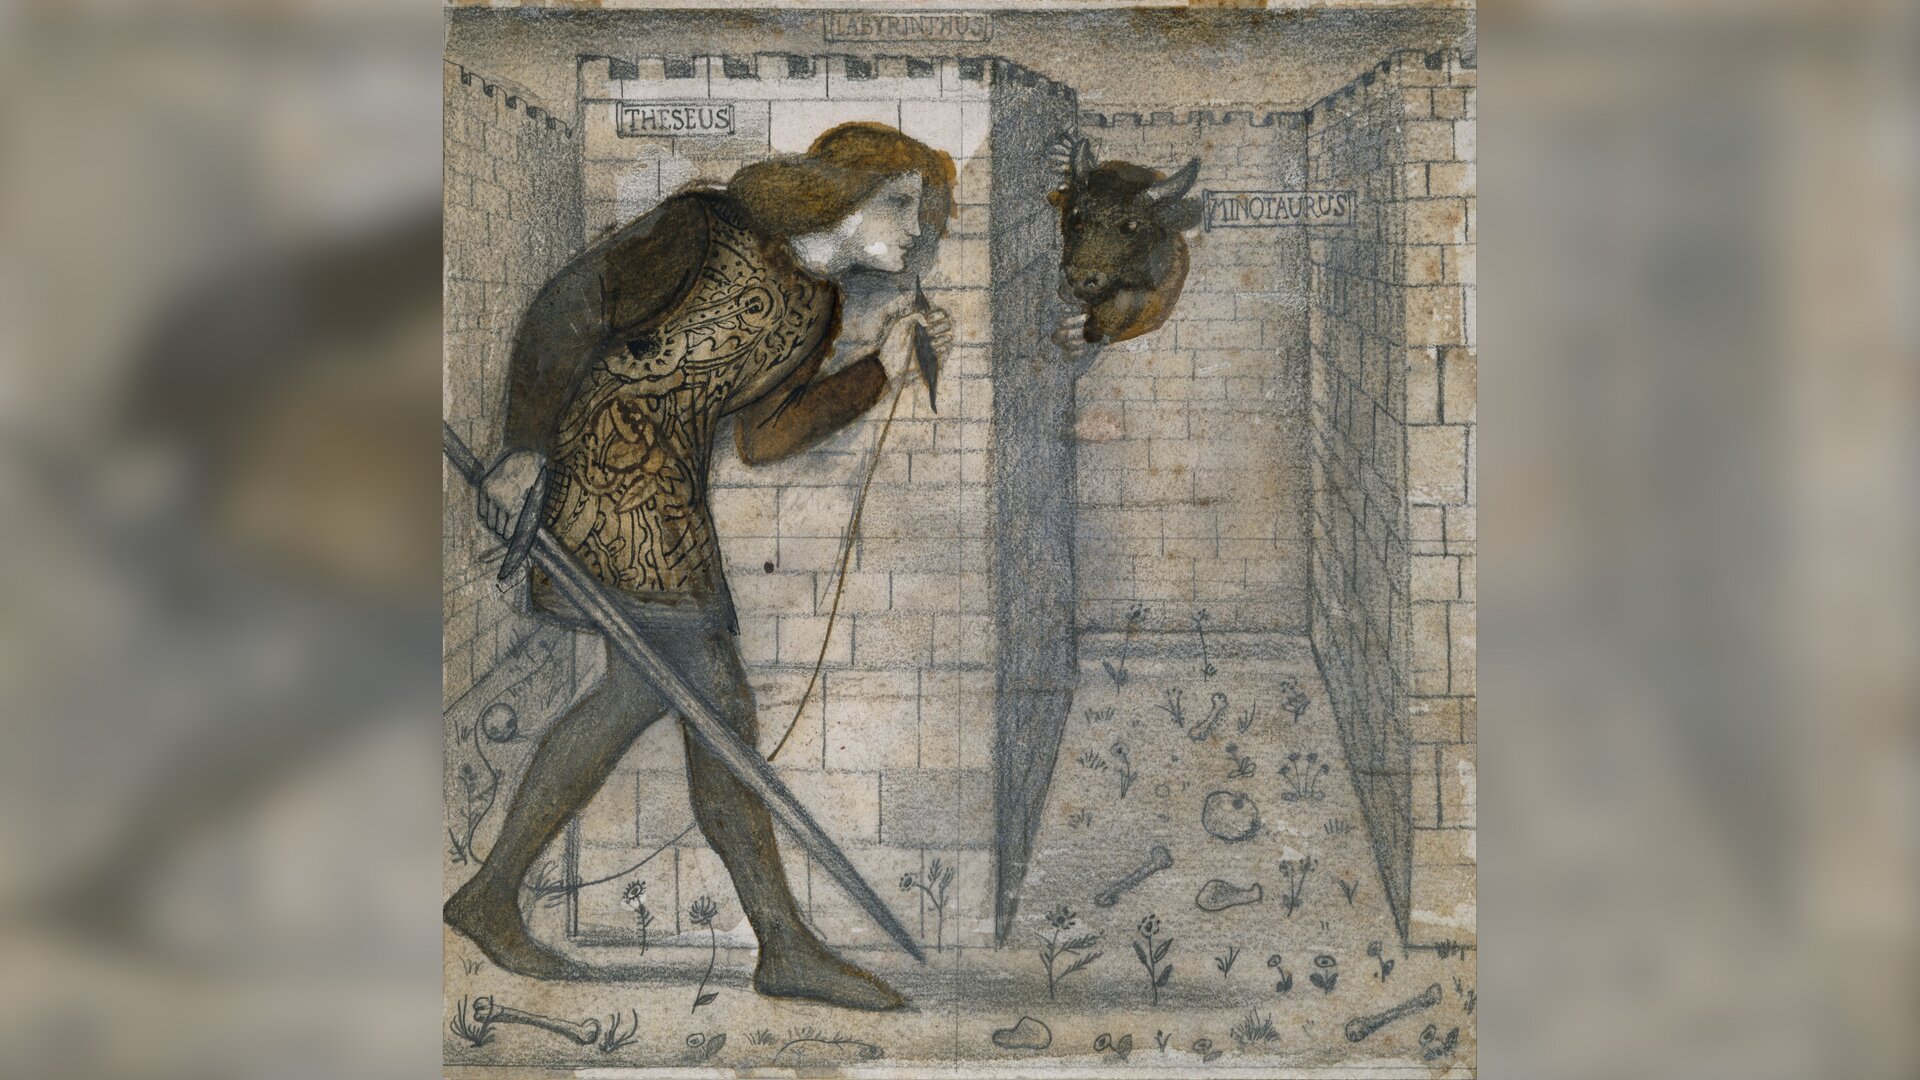 Obraz przedstawia młodego mężczyznę z kłębkiem nici w lewej dłoni. W prawej dłoni mężczyzna trzyma miecz. Zza ściany labiryntu wygląda postać Minotaura.